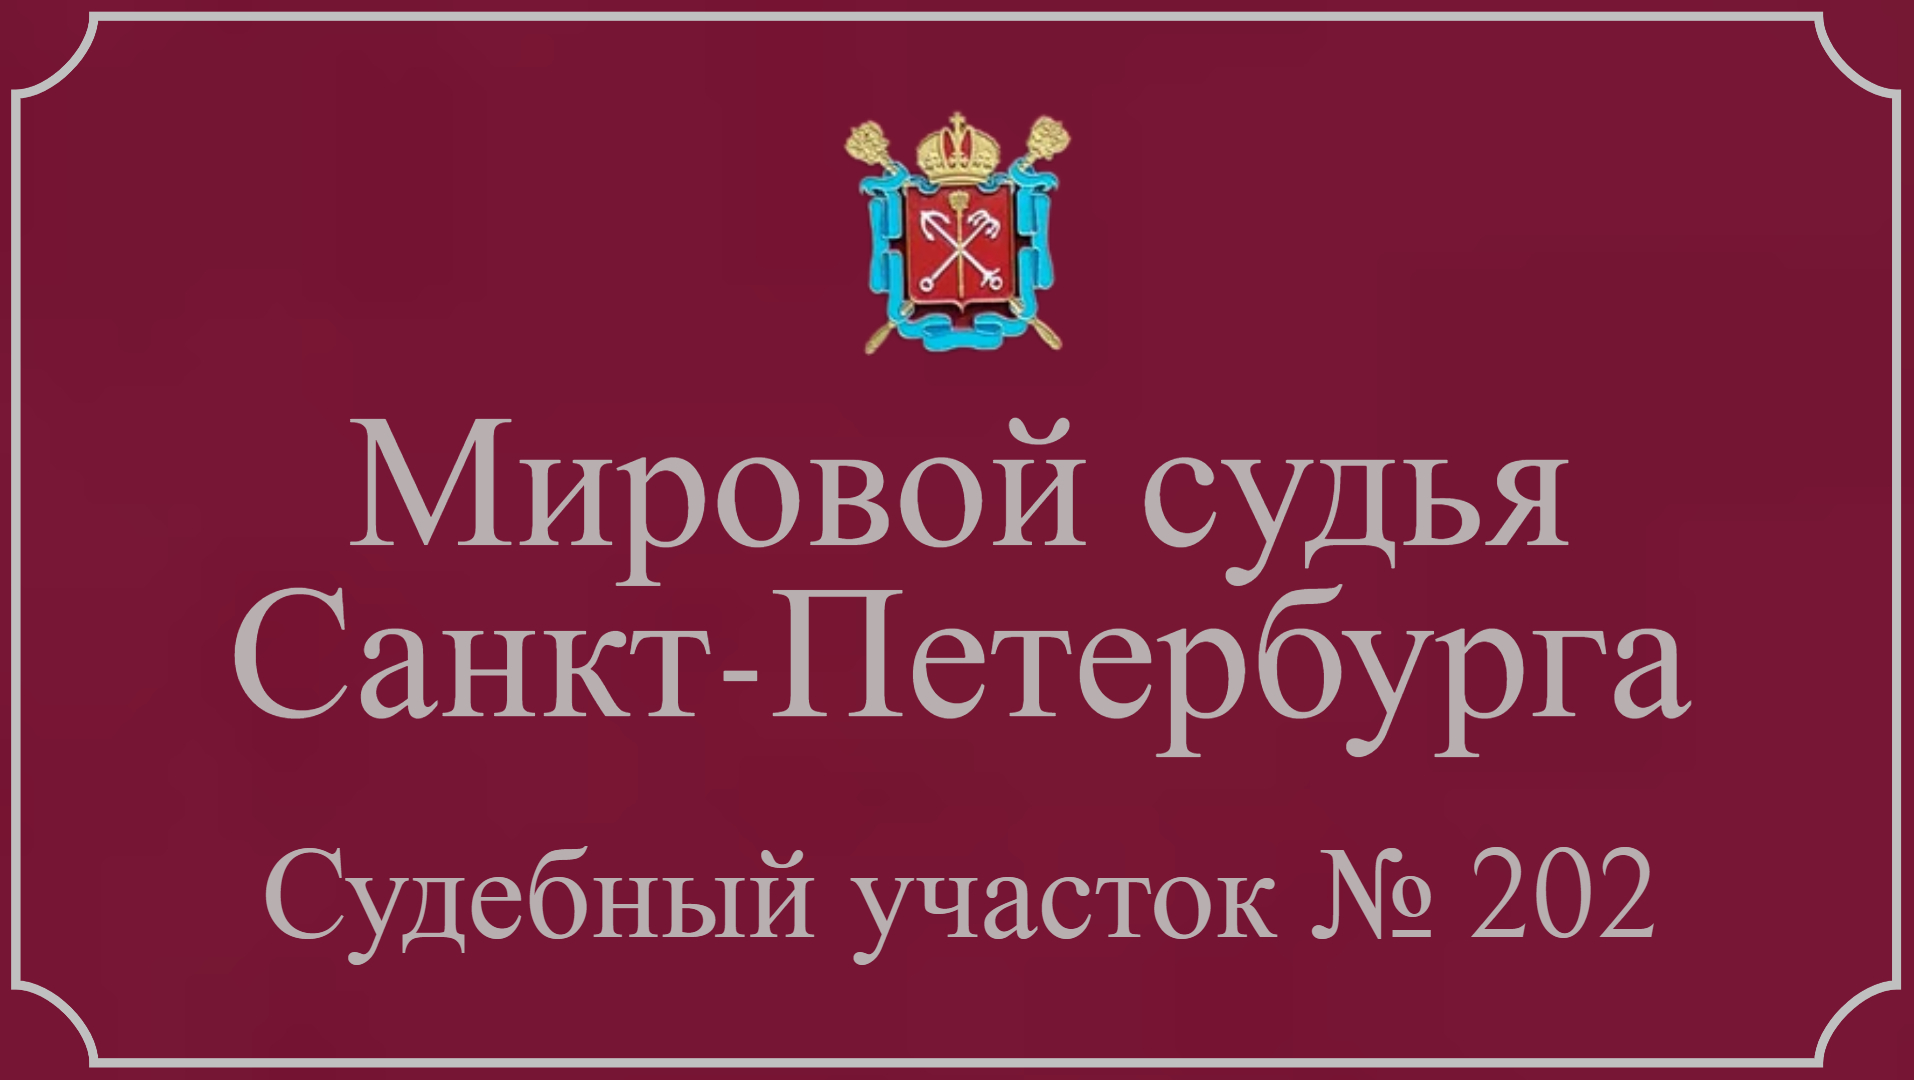 Информация по 202 судебному участку в Санкт-Петербурге.